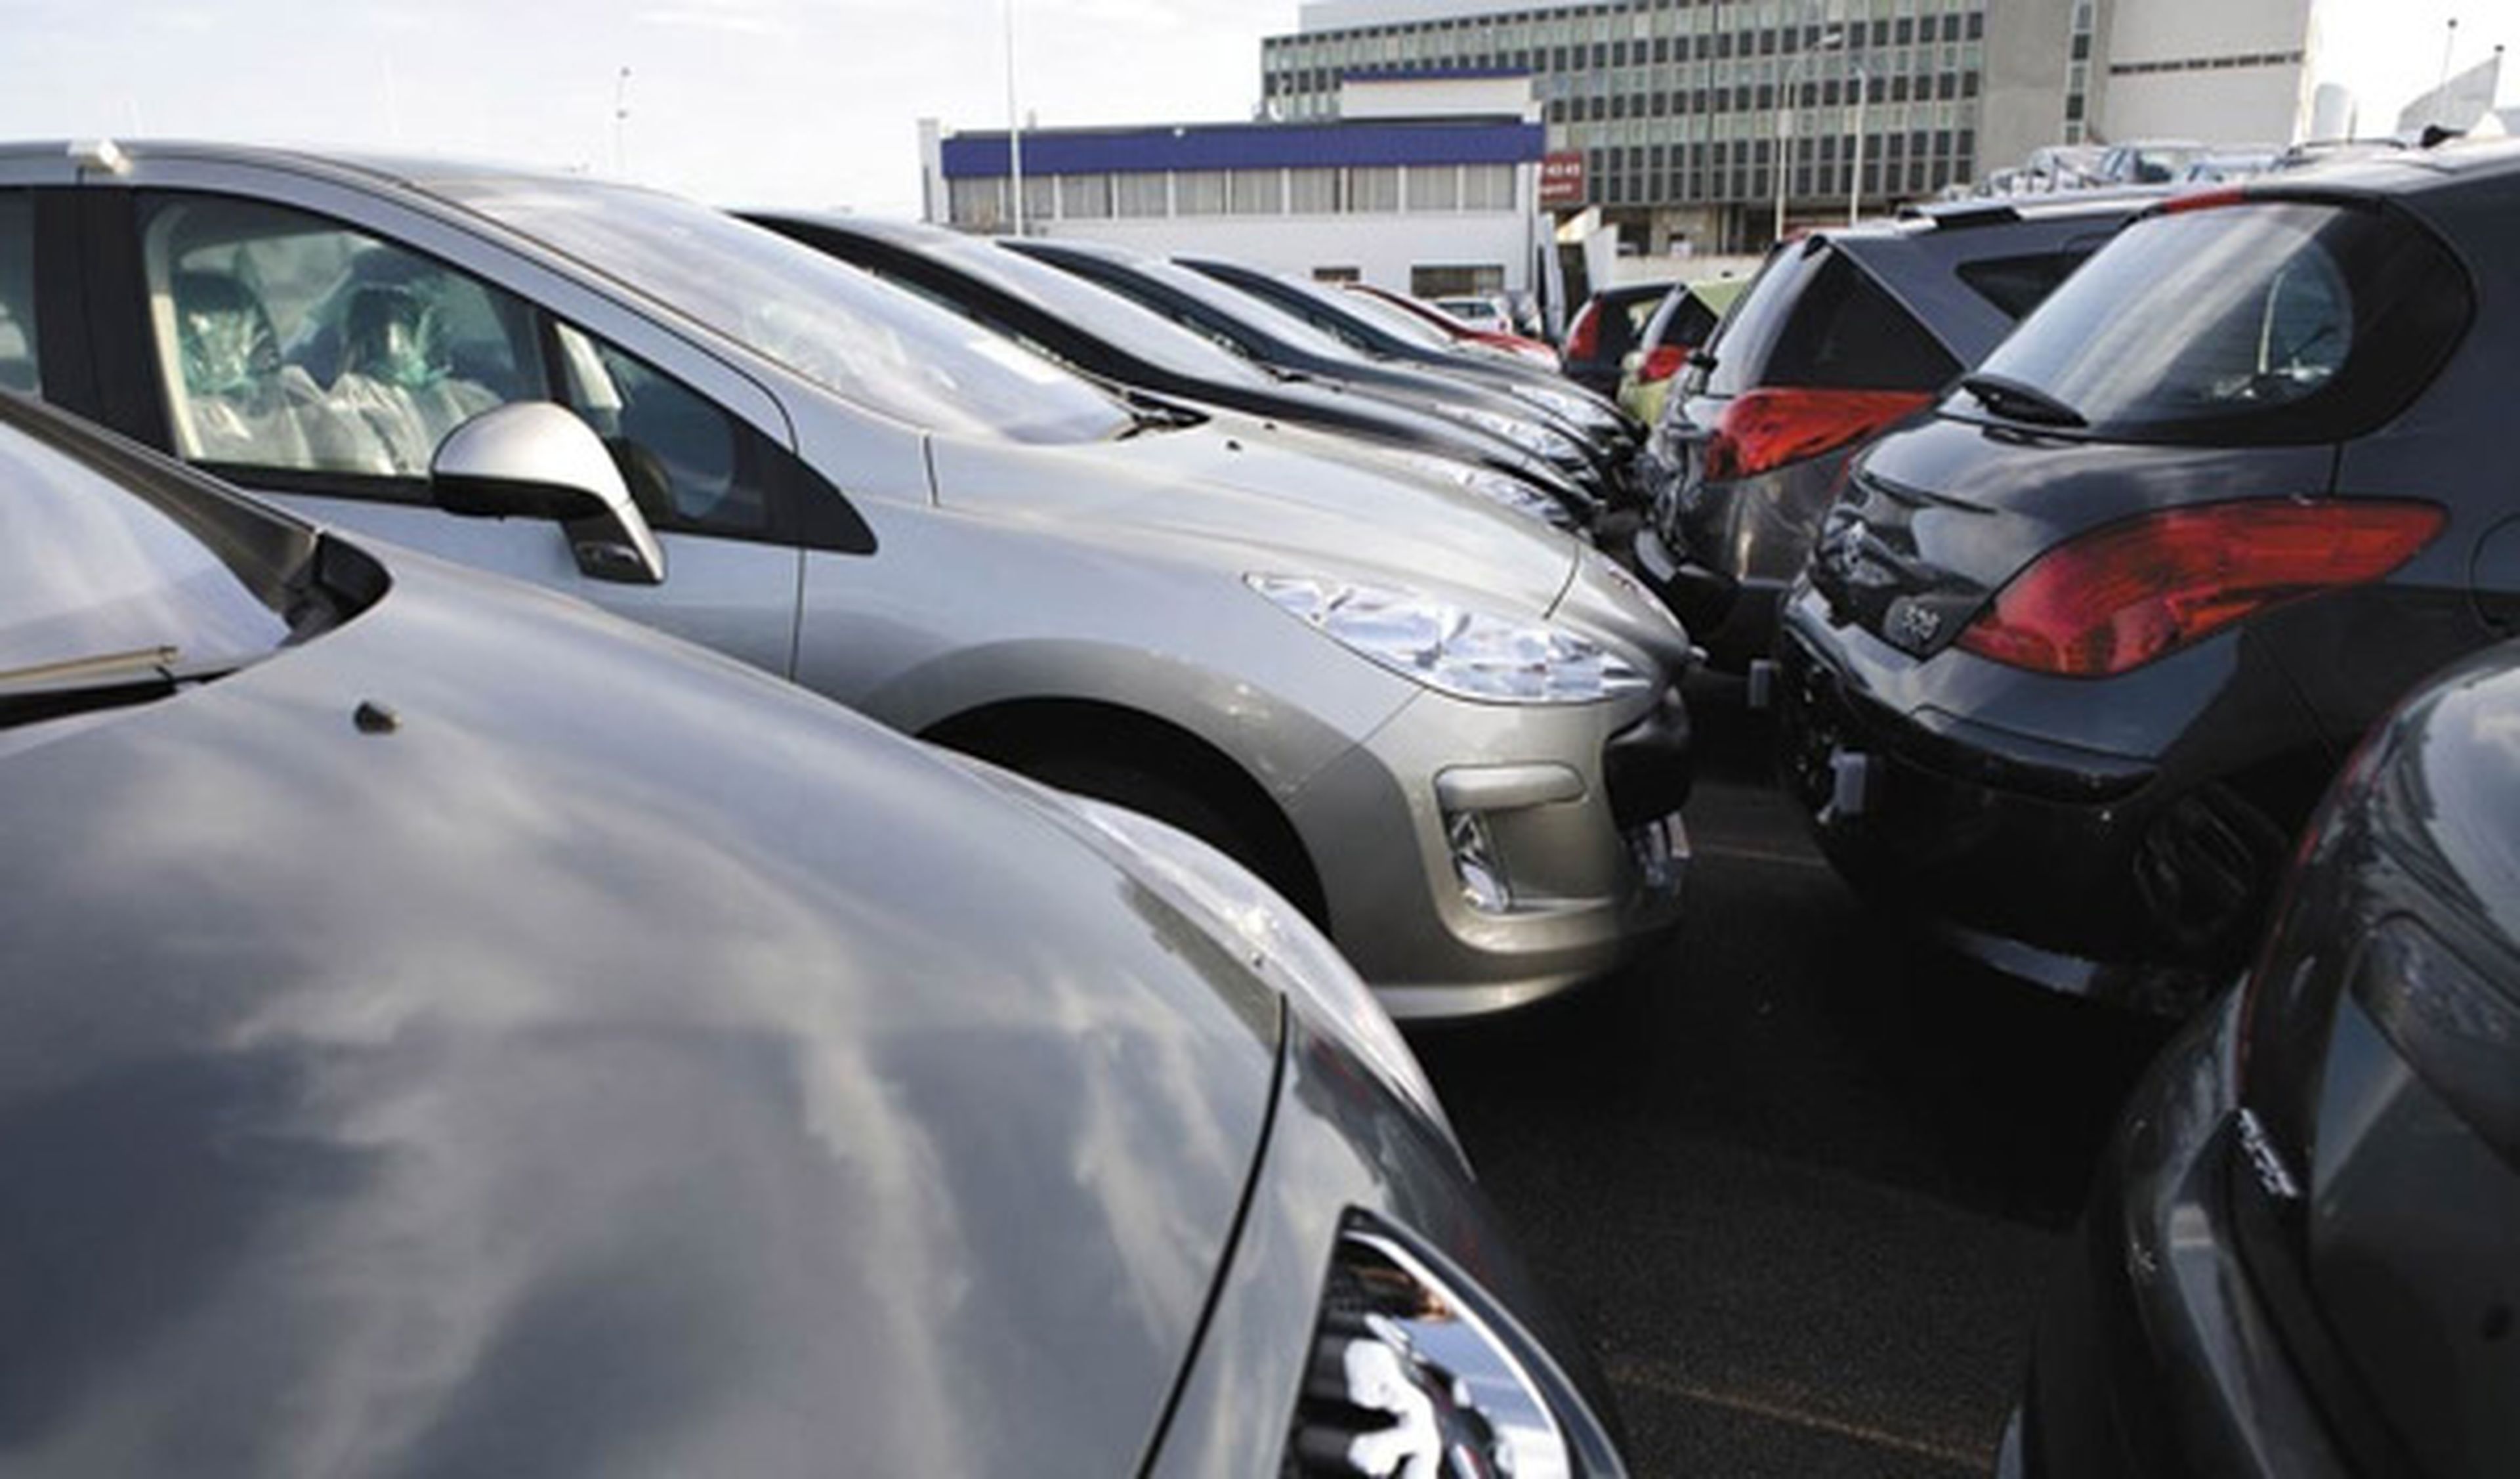 Las ventas de vehículos usados aumentarán en 2011